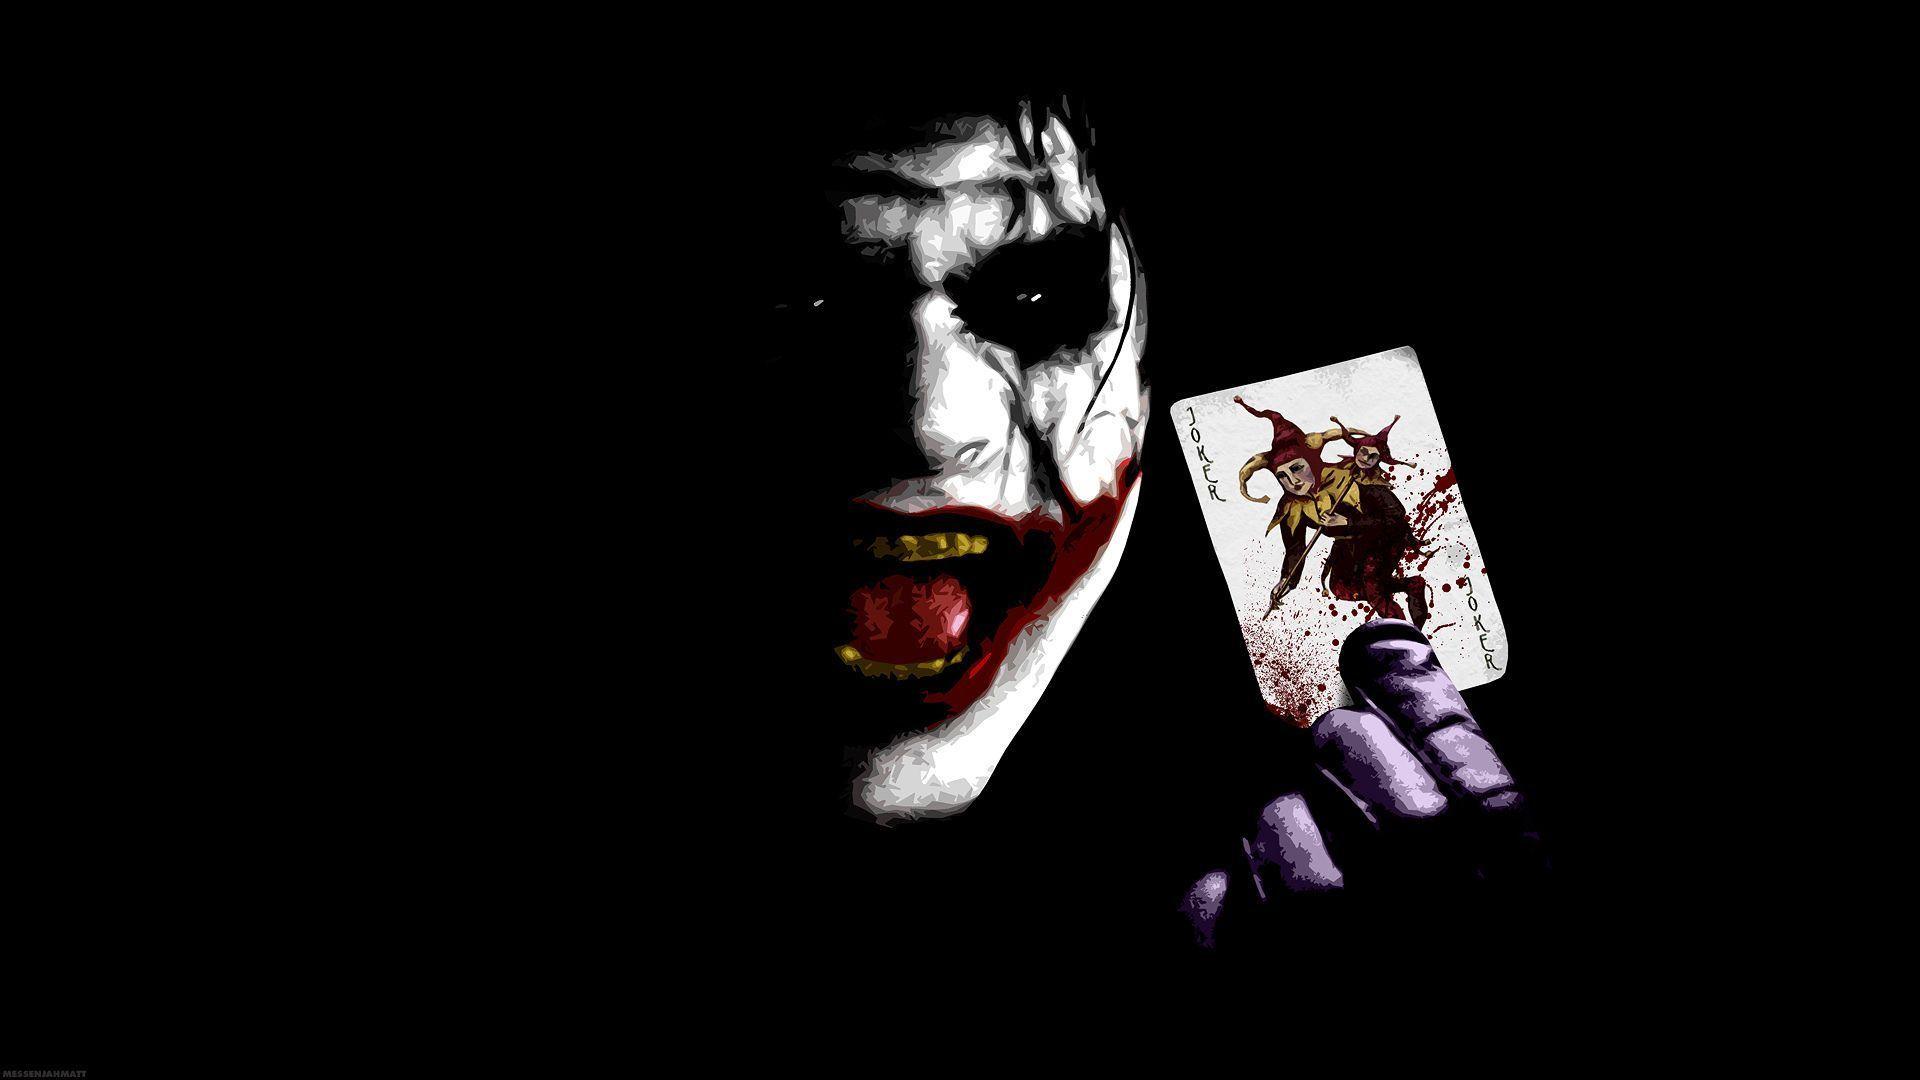 The Joker Joker Wallpaper